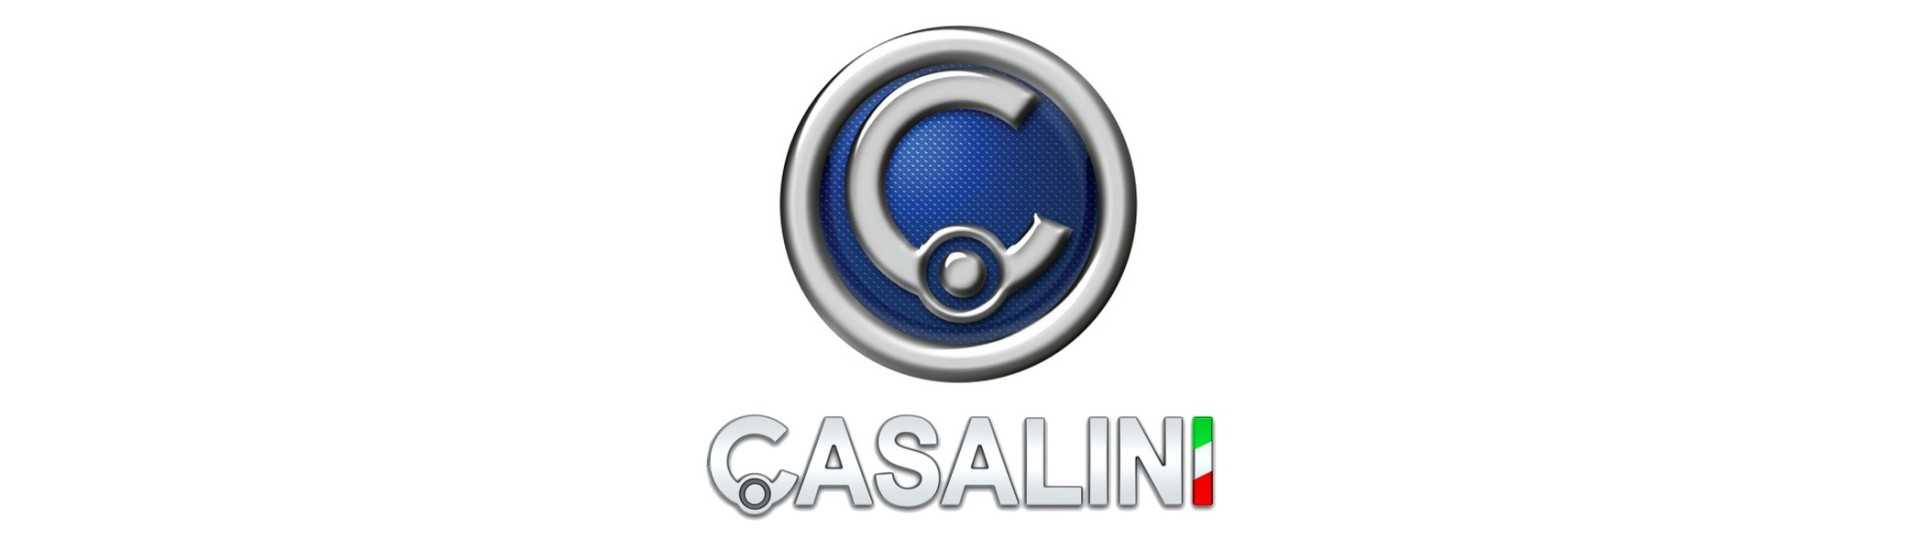 Mejor precio mano palanca de freno para coche sin permiso Casalini